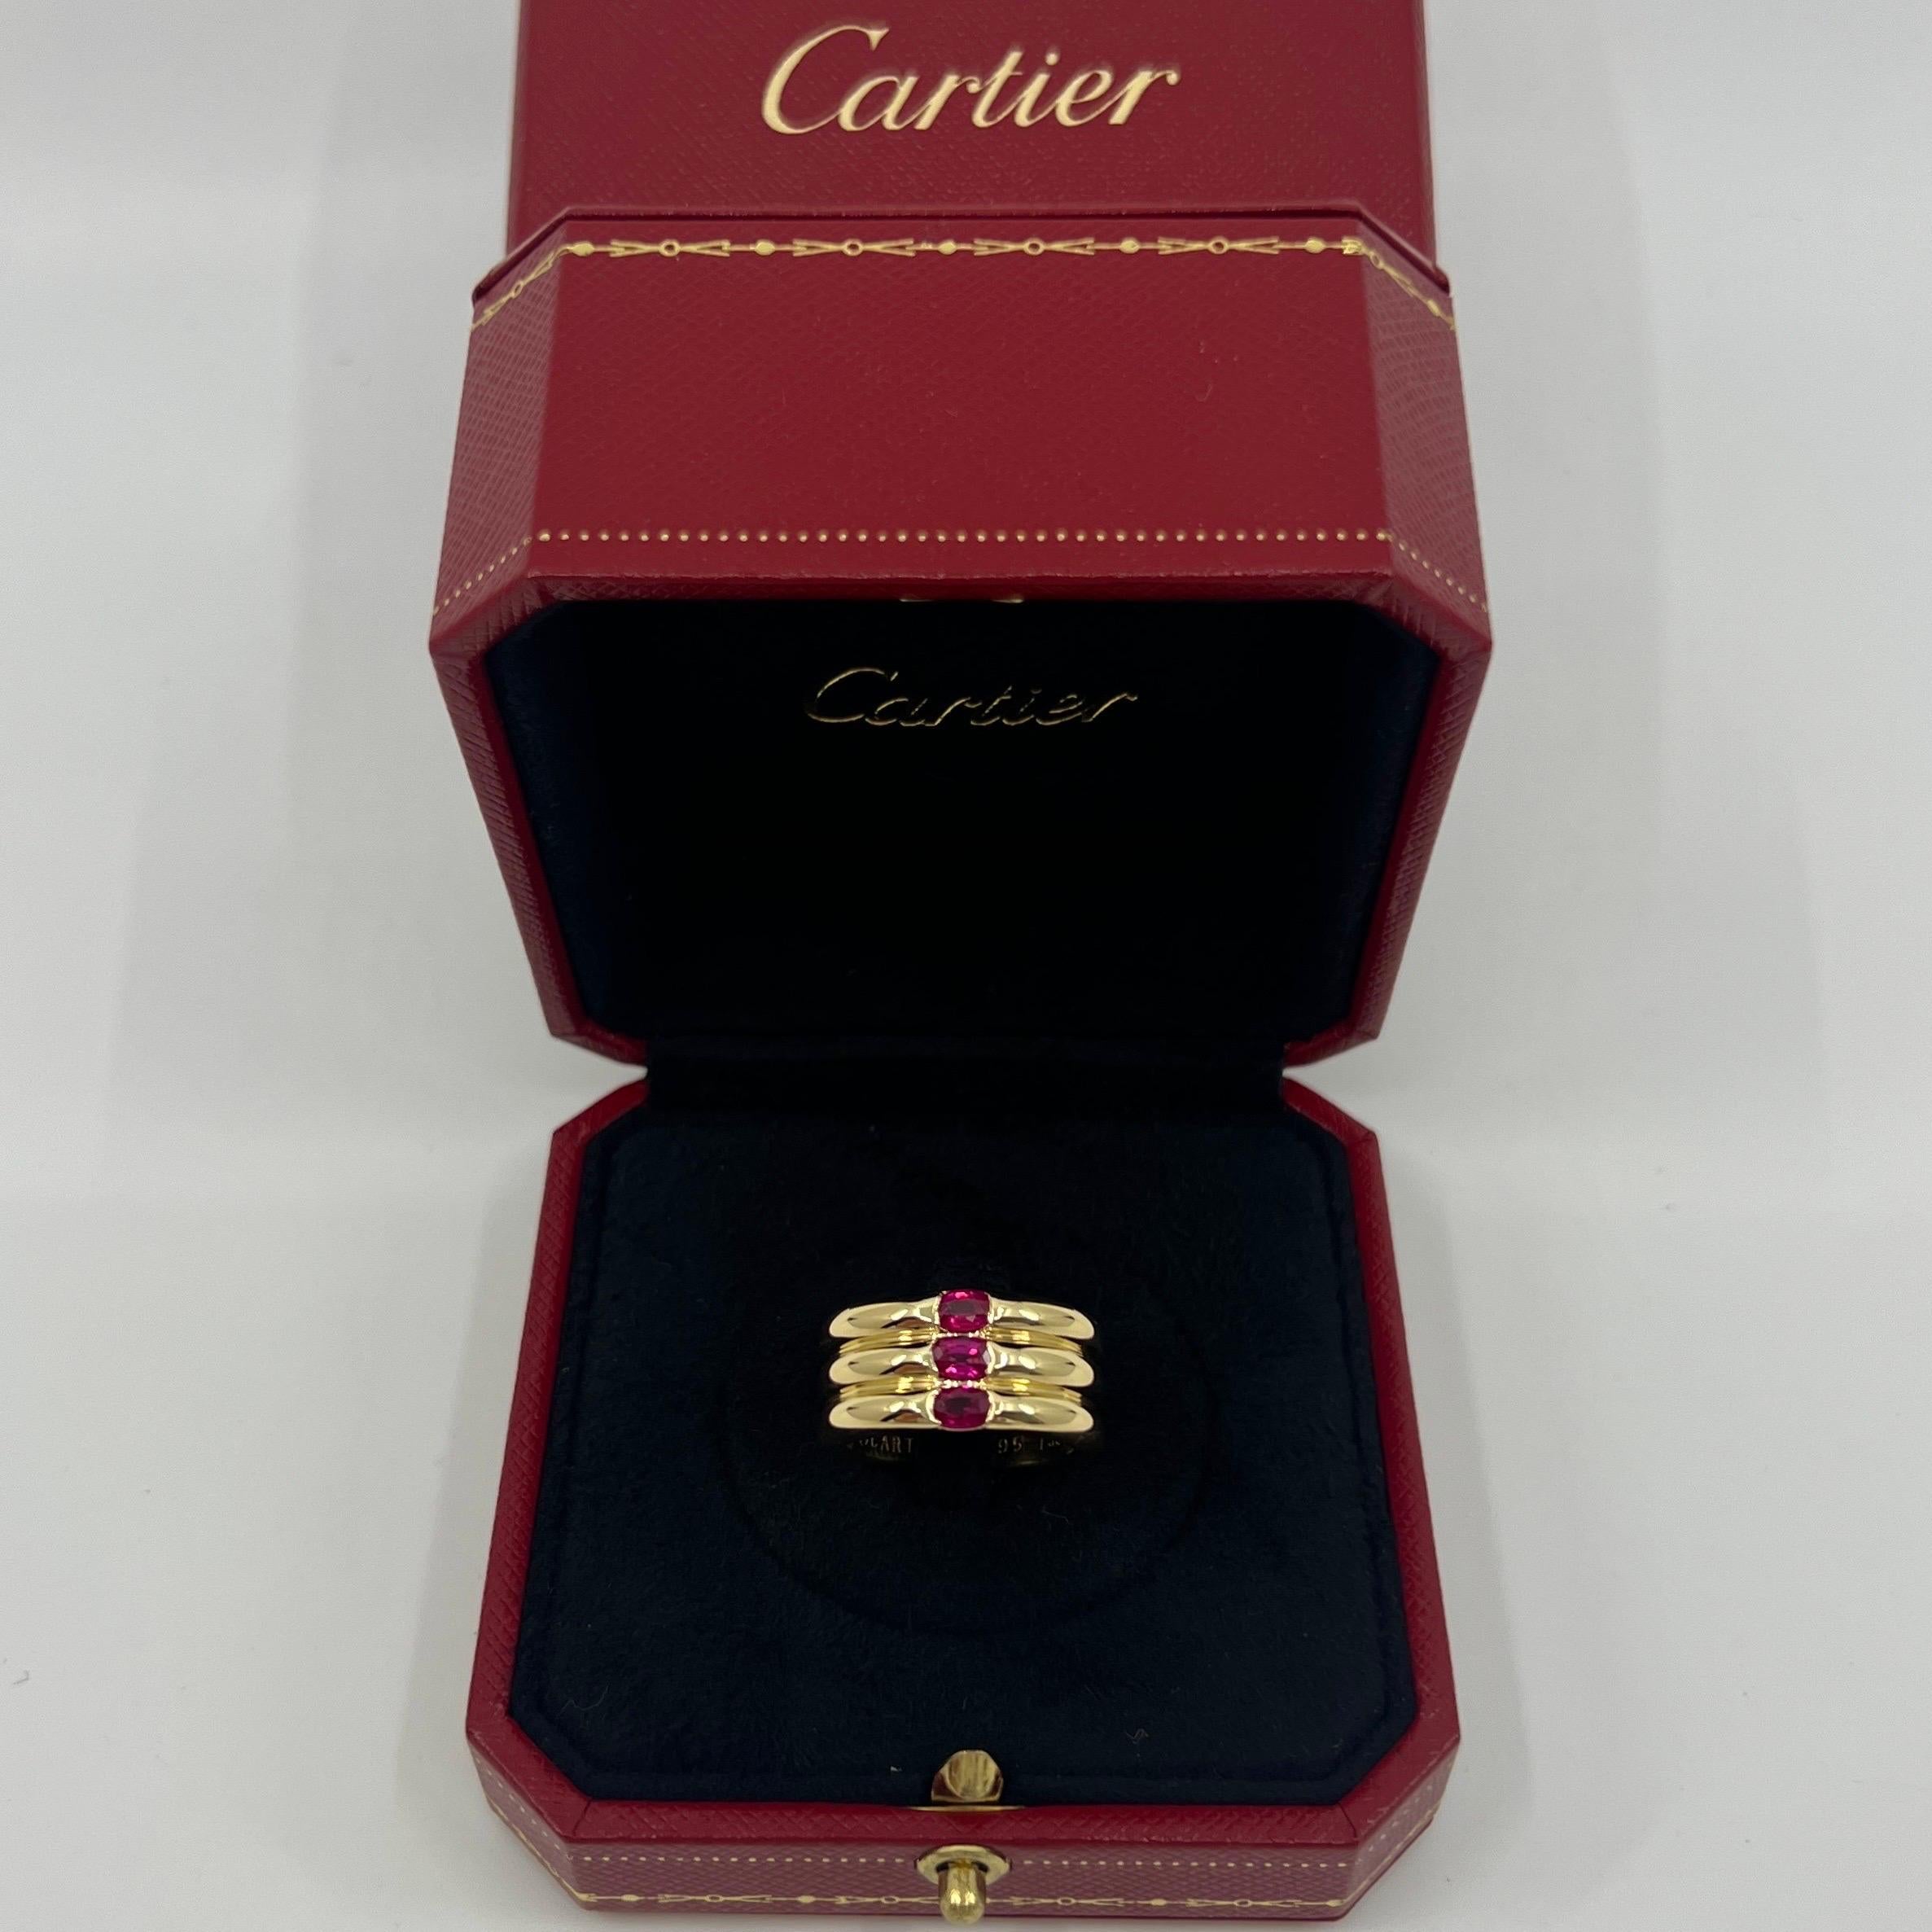 Rare Vintage Cartier Oval Cut Ruby 18k Gelbgold Drei Stein Band Ring.

Atemberaubender Ring aus Gelbgold von Cartier, besetzt mit drei feinen, lebhaften, rosaroten Rubinen. Edle Schmuckhäuser wie Cartier verwenden nur die feinsten Edelsteine, und